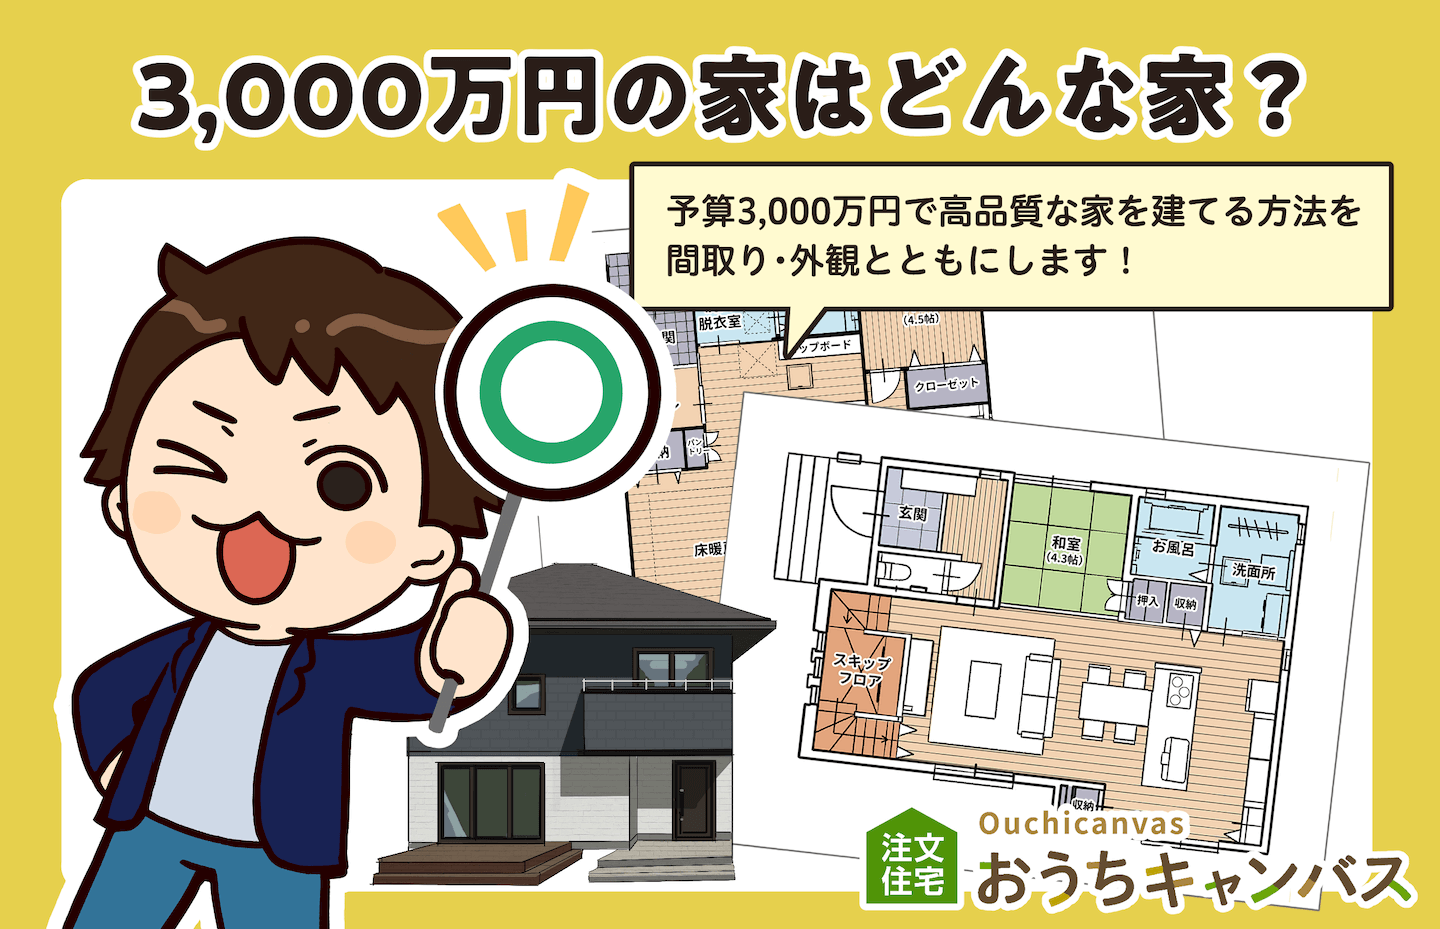 【3,000万円の家】予算内で高品質な家を建てるポイント【土地あり】